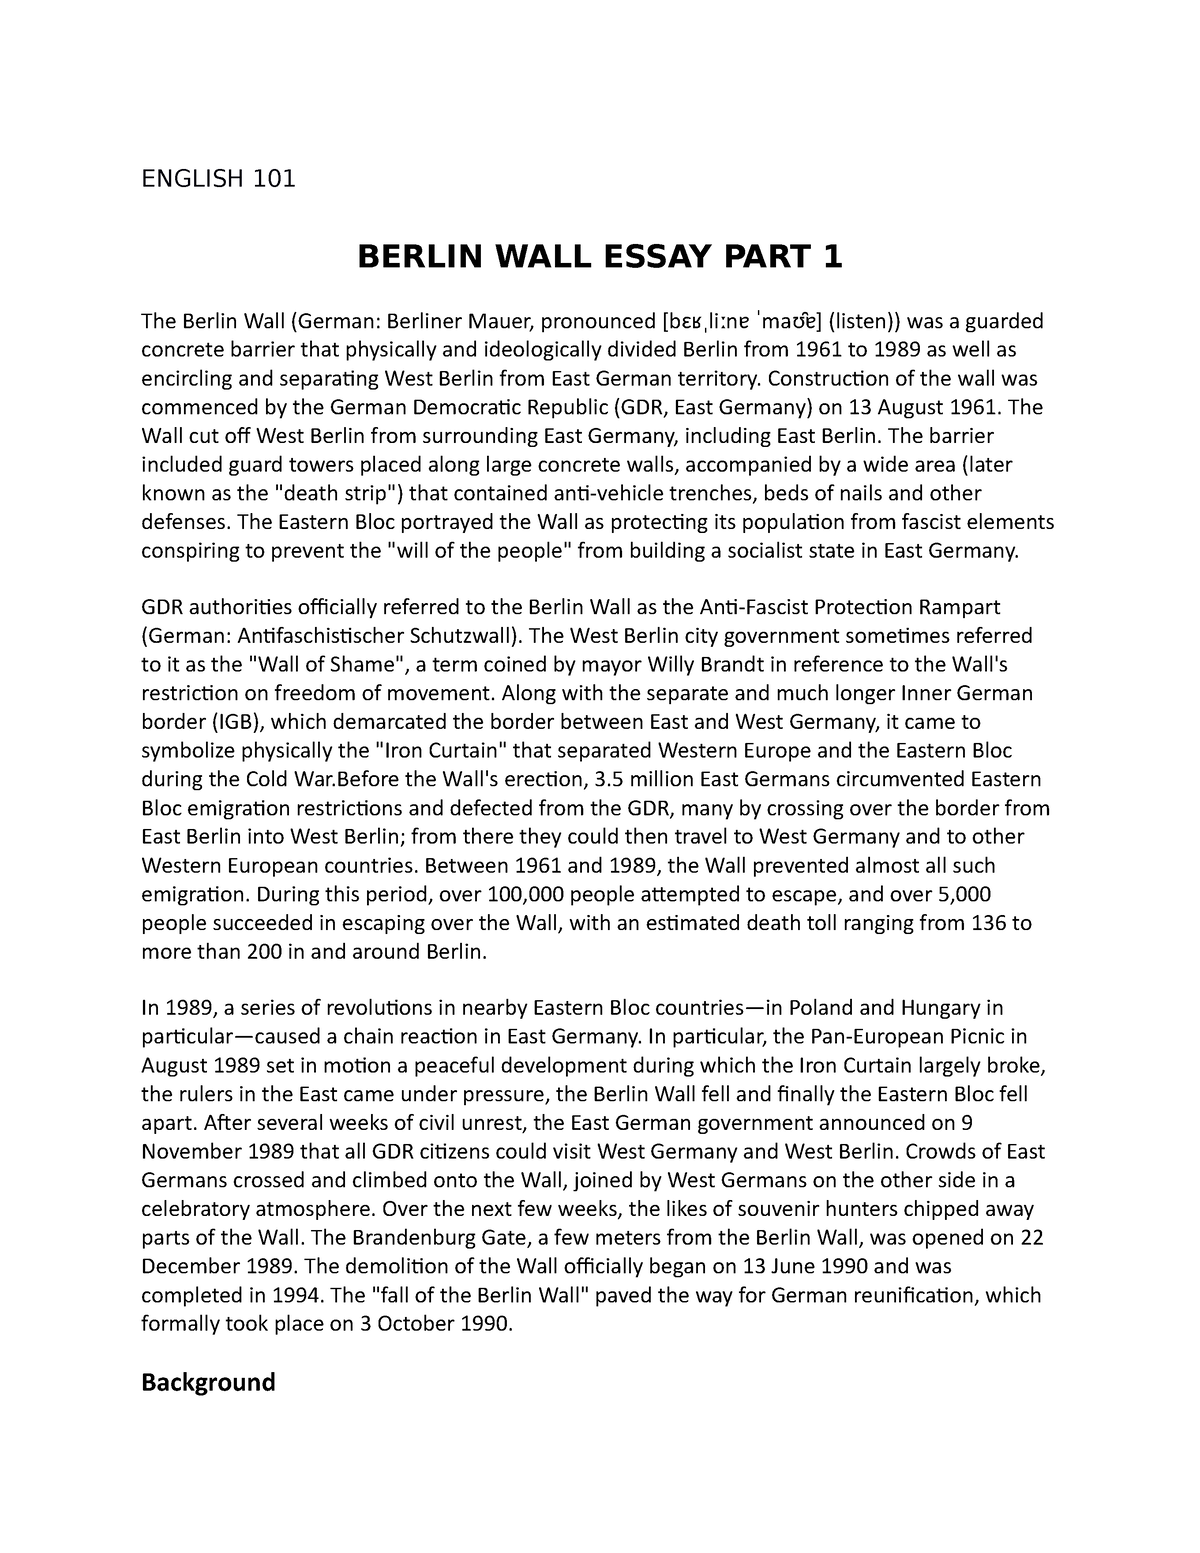 berlin wall argumentative essay topics